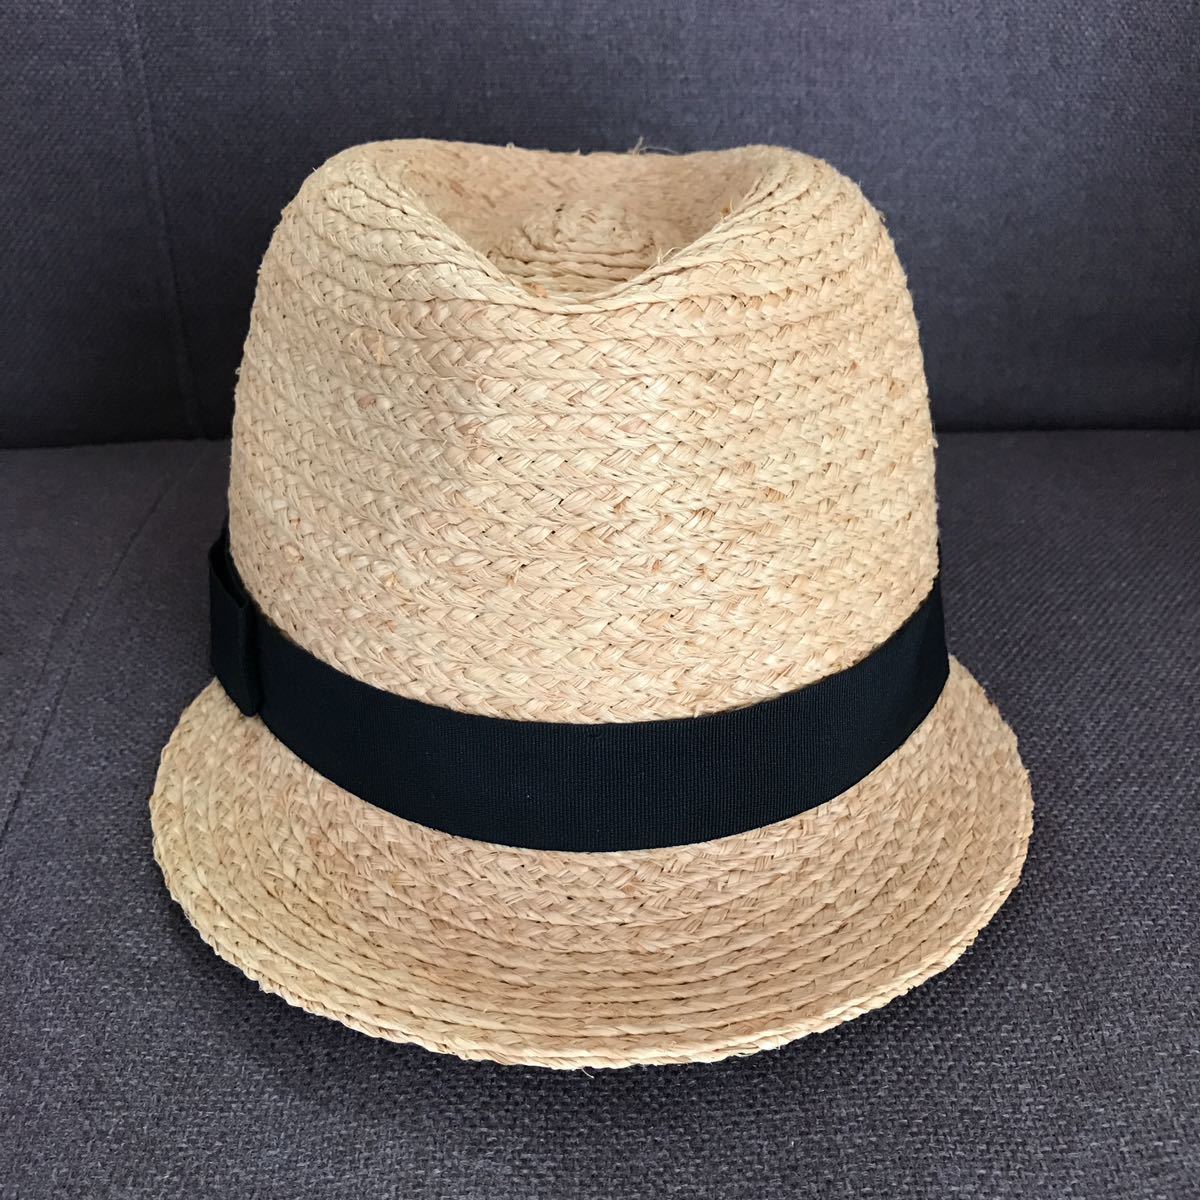  Muji Ryohin соломенная шляпа женский чёрный лента черный натуральный бежевый черновой .a шляпа соломинка мягкая шляпа панама ma Casquette 